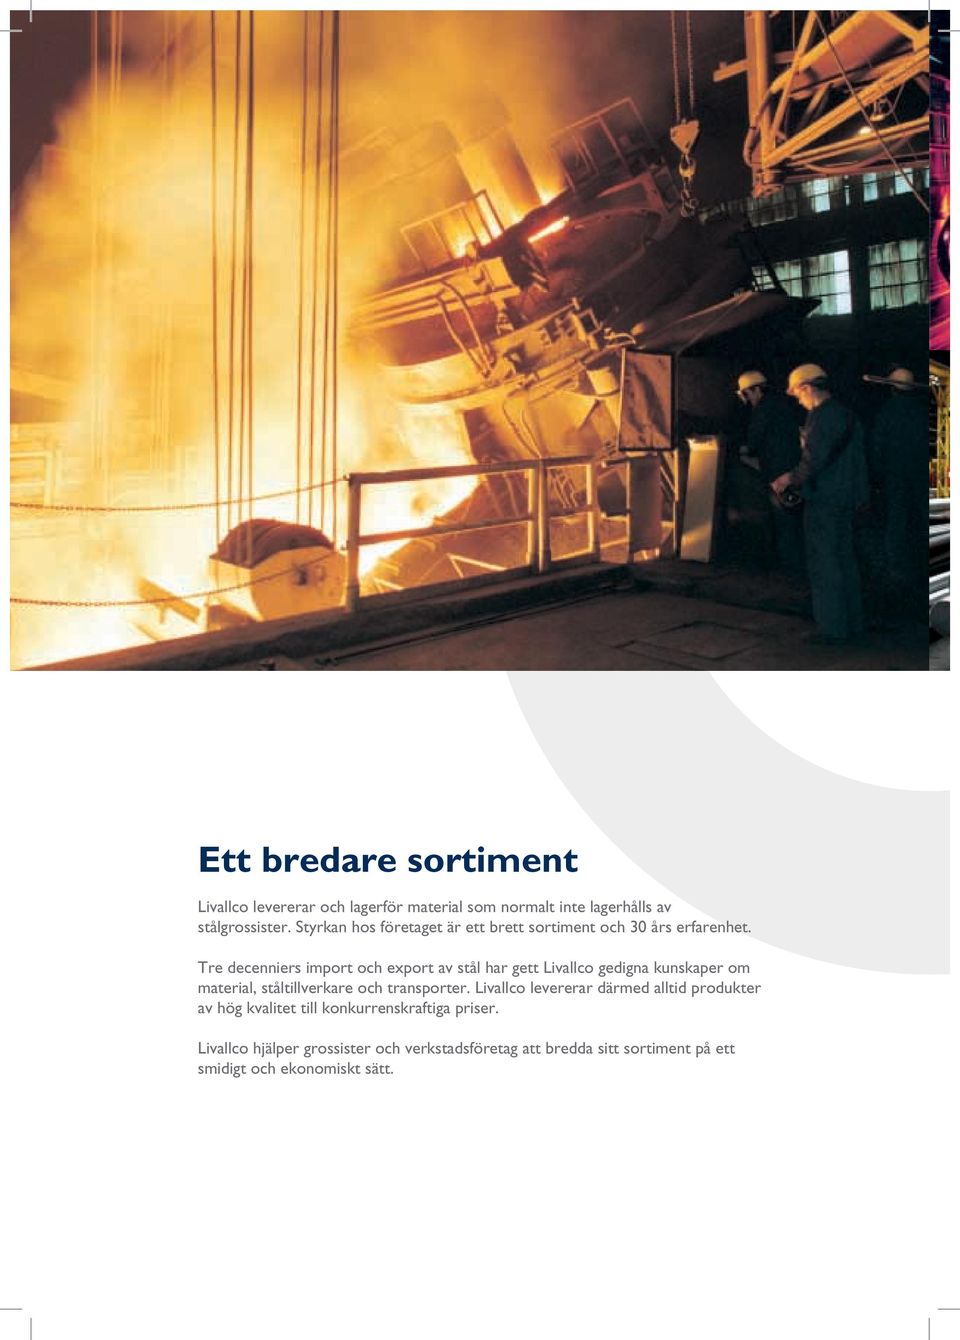 Tre decenniers import och export av stål har gett Livallco gedigna kunskaper om material, ståltillverkare och transporter.